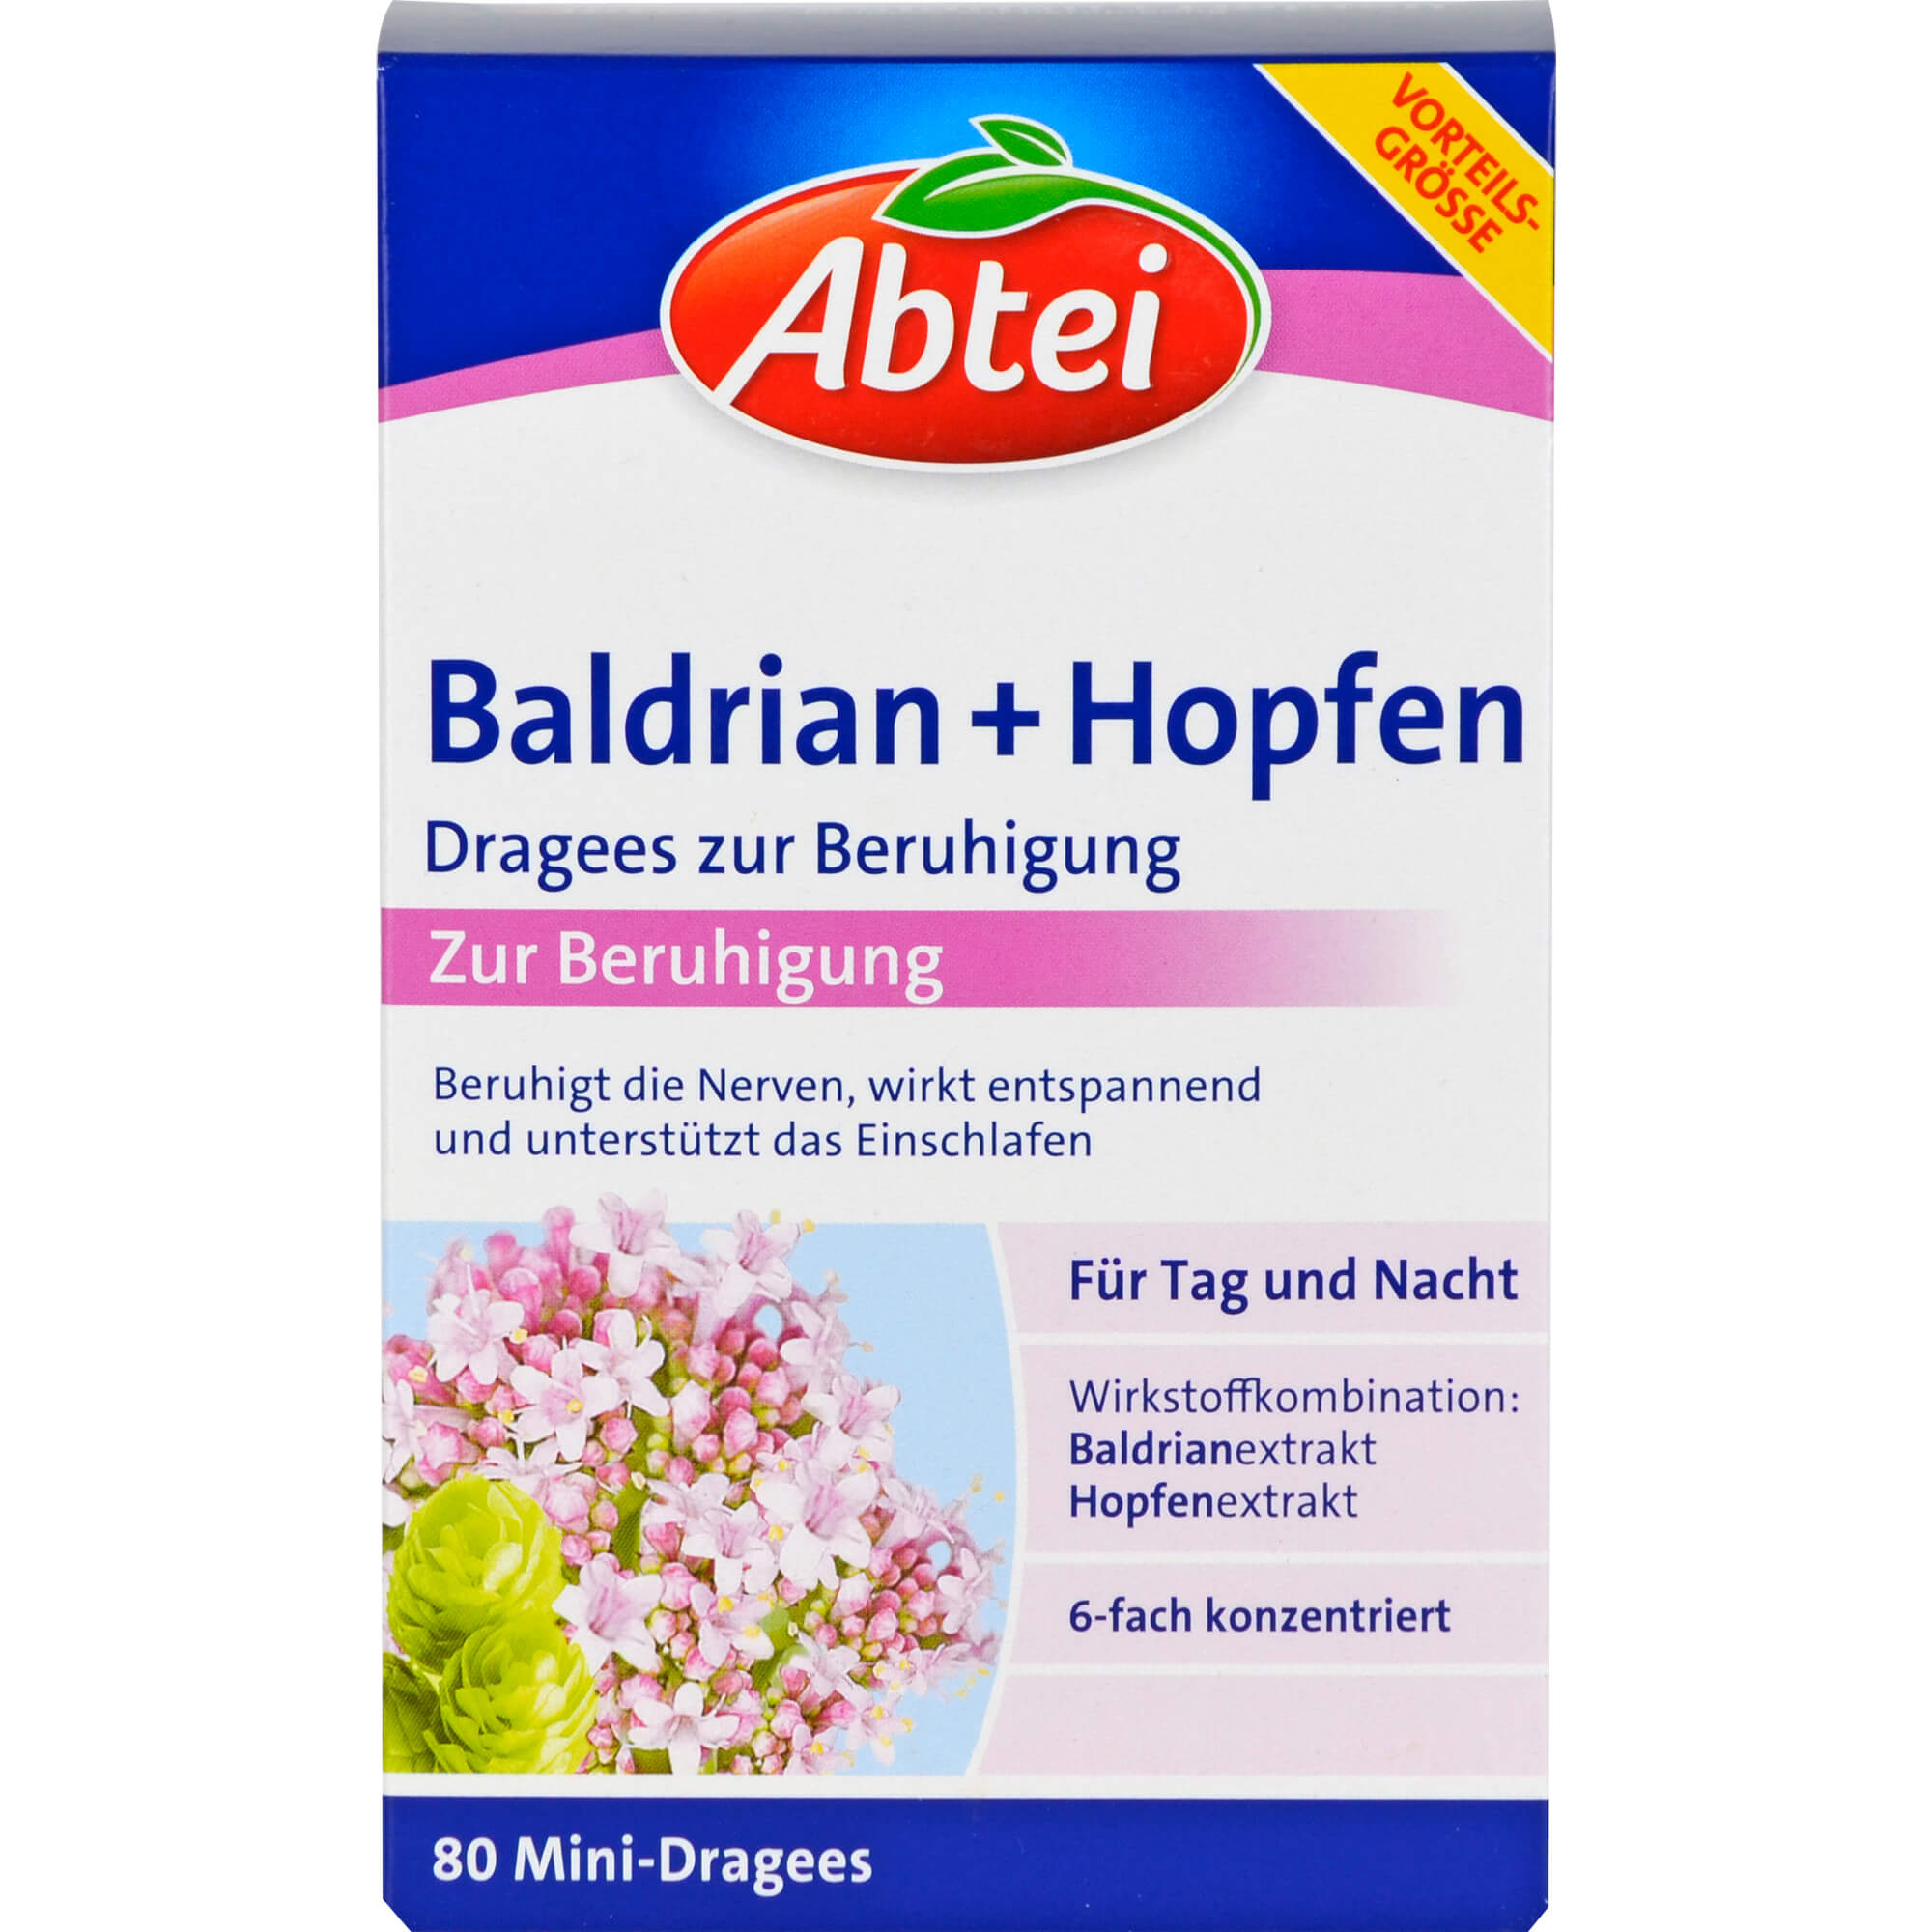 ABTEI Baldrian+Hopfen Dragees zur Beruhigung